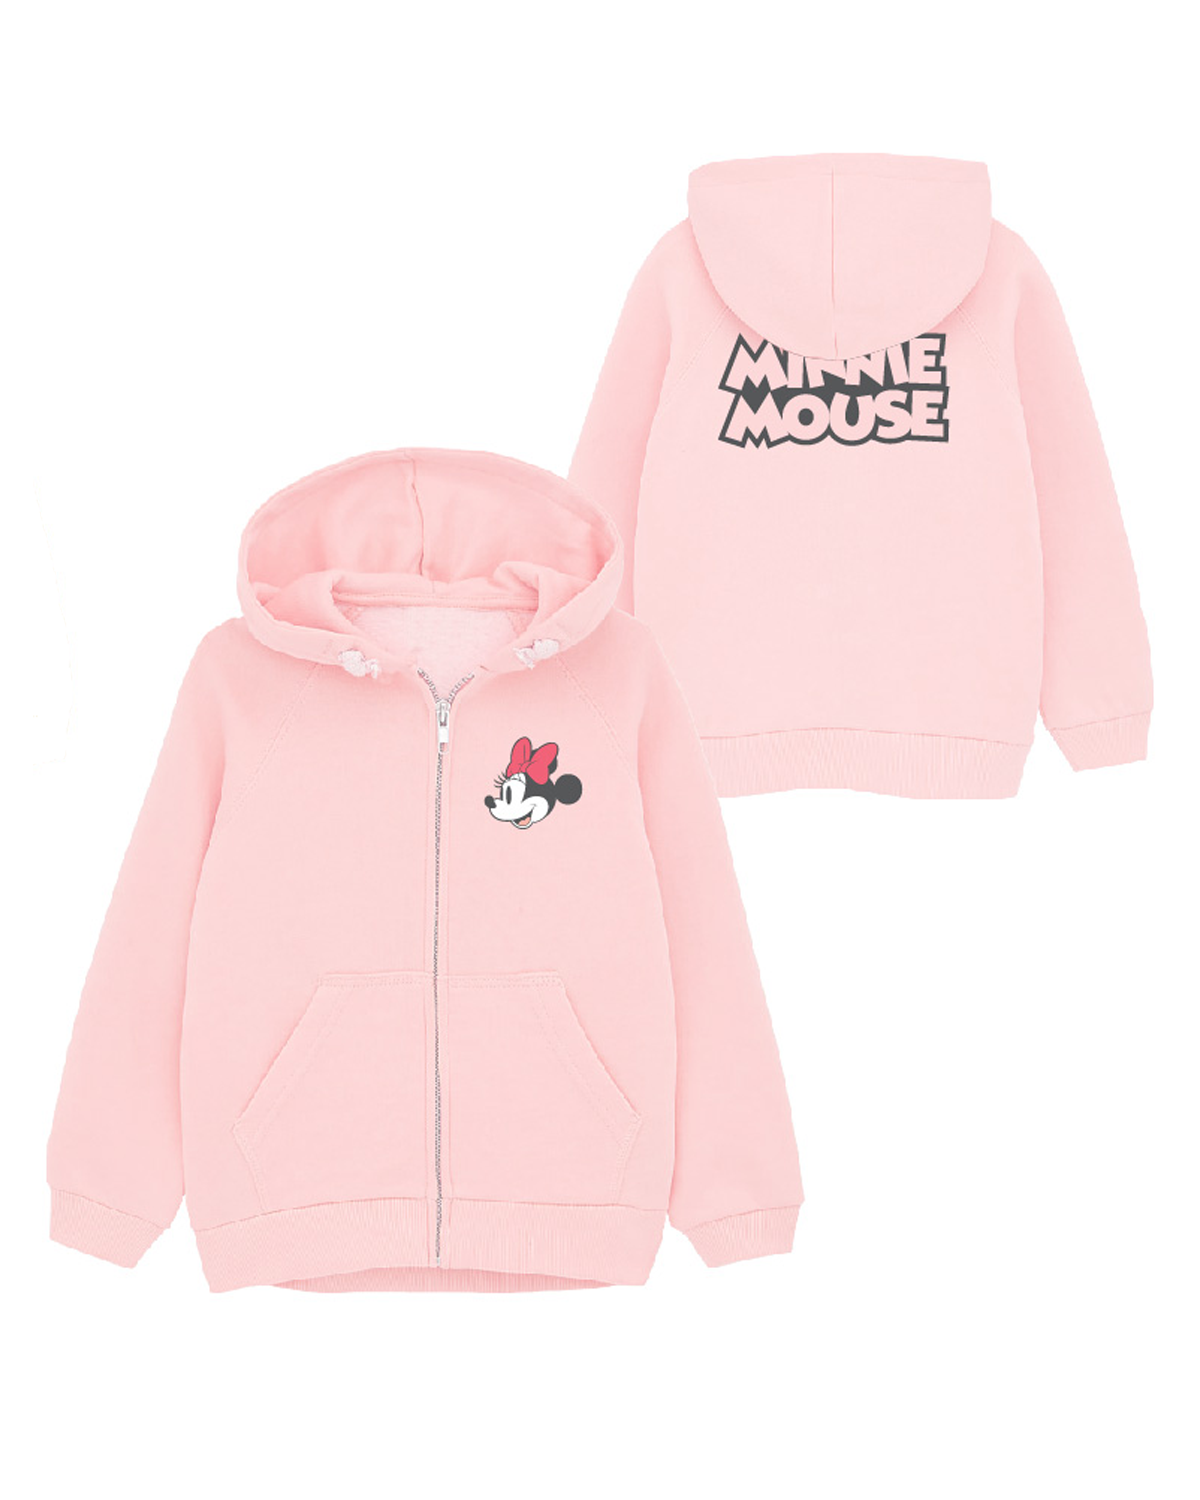 Minnie Mouse - licence Dívčí mikina - Minnie Mouse 52187834, světle růžová Barva: Růžová, Velikost: 134